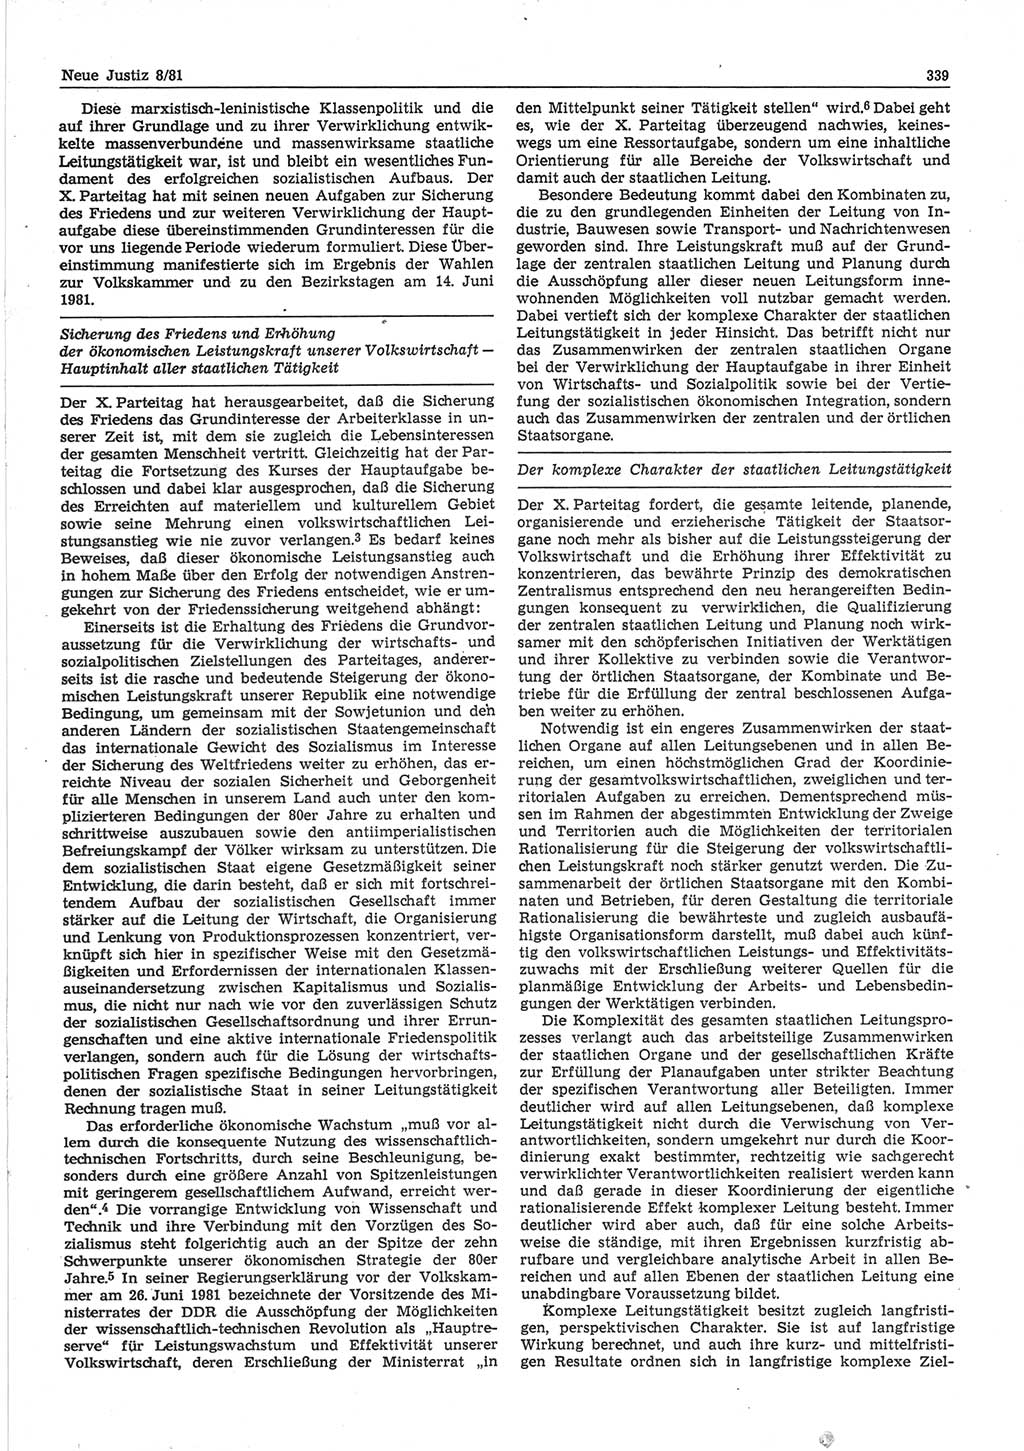 Neue Justiz (NJ), Zeitschrift für sozialistisches Recht und Gesetzlichkeit [Deutsche Demokratische Republik (DDR)], 35. Jahrgang 1981, Seite 339 (NJ DDR 1981, S. 339)